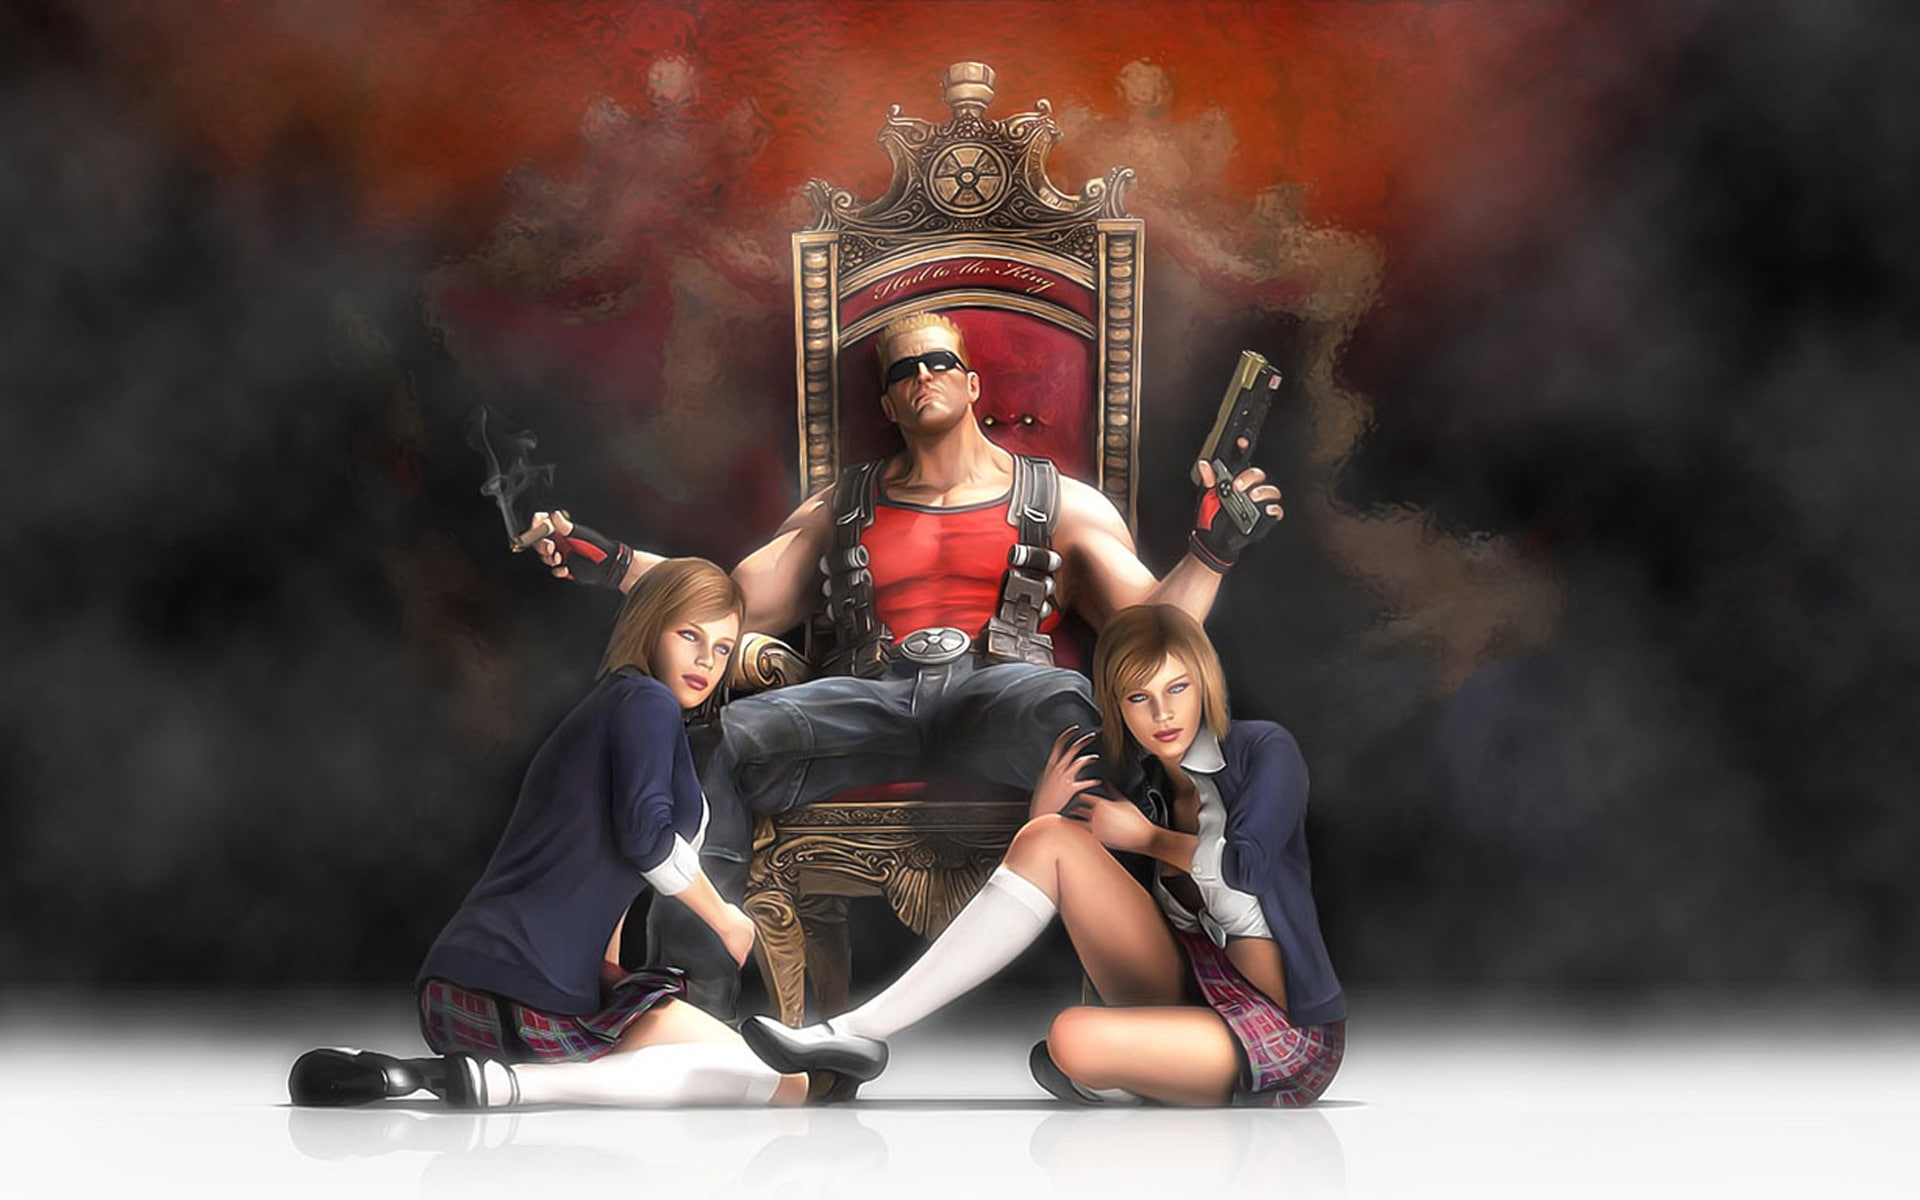 Duke Nukem Forever Poster, action, game, guns, blood, girls